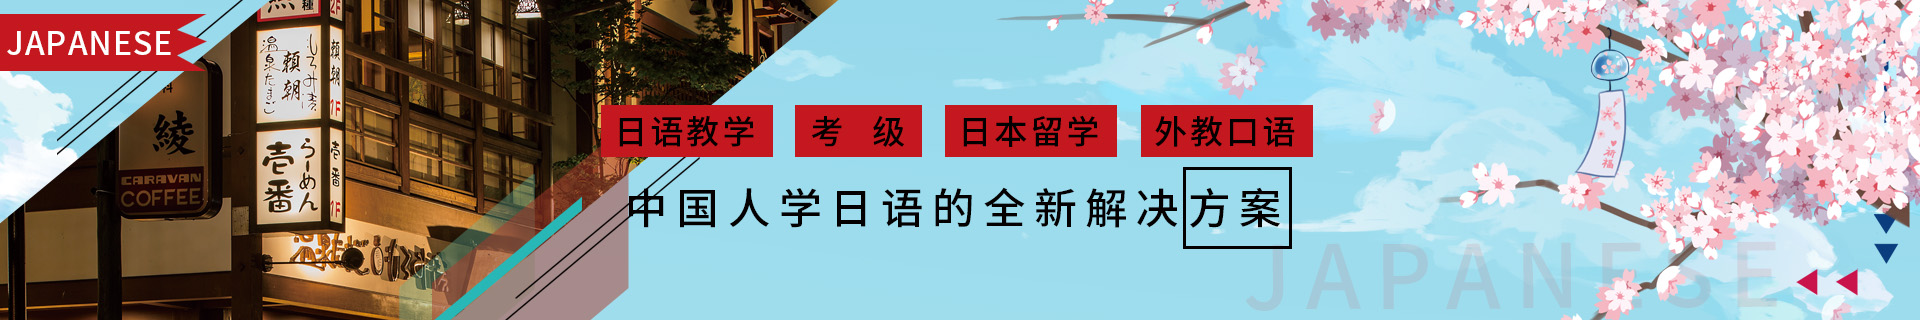 烟台樱花国际日语培训机构